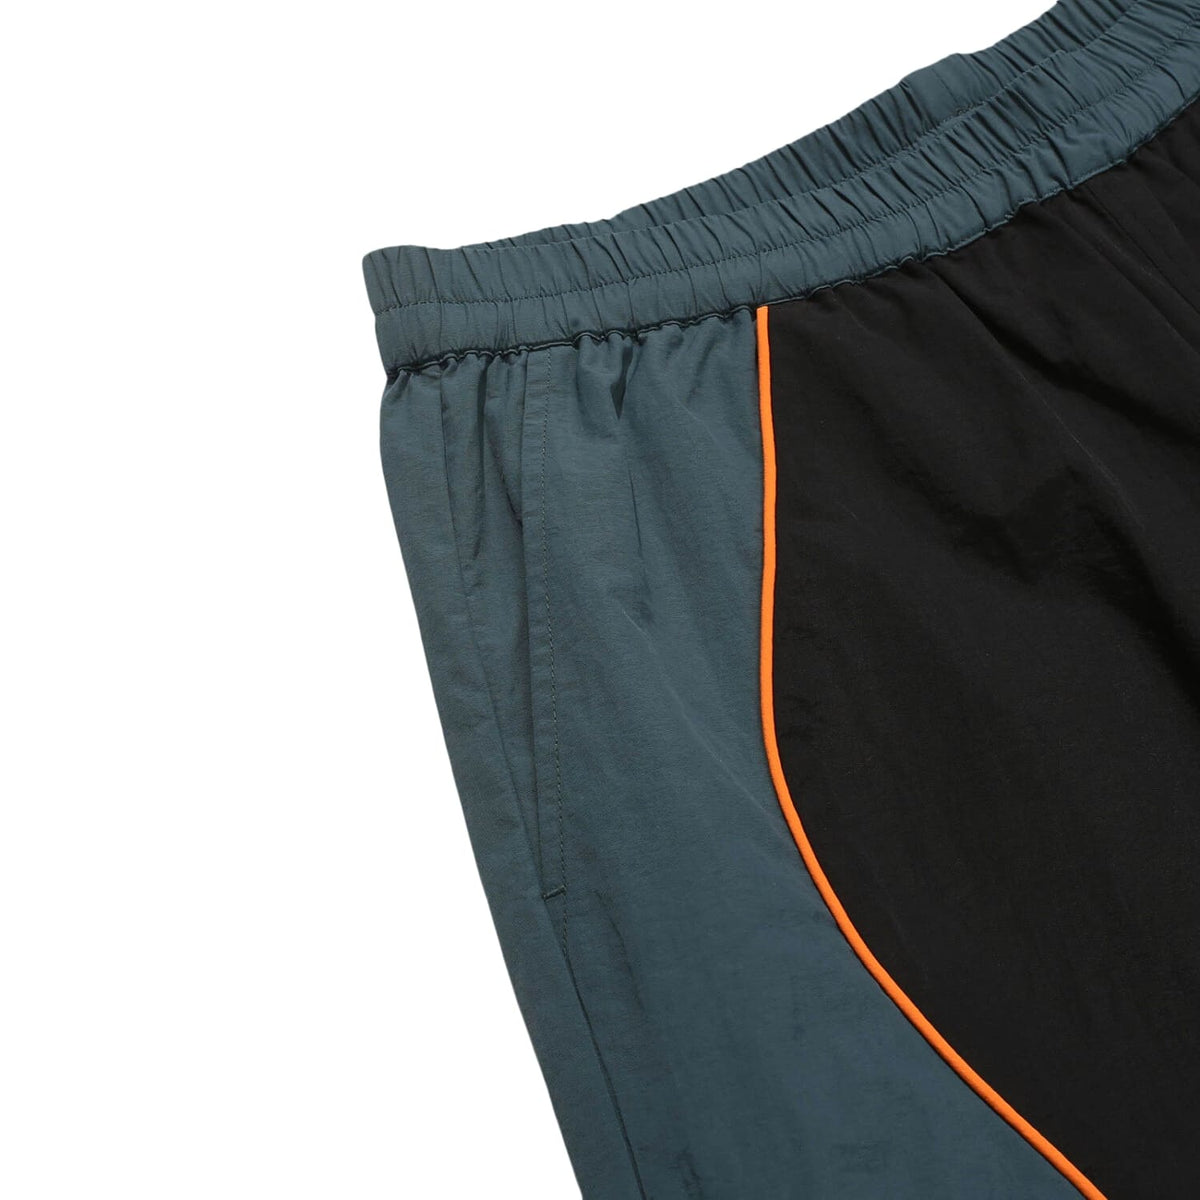 Helas Lime Sport Shorts - Black - Mens Gym Shorts by Helas